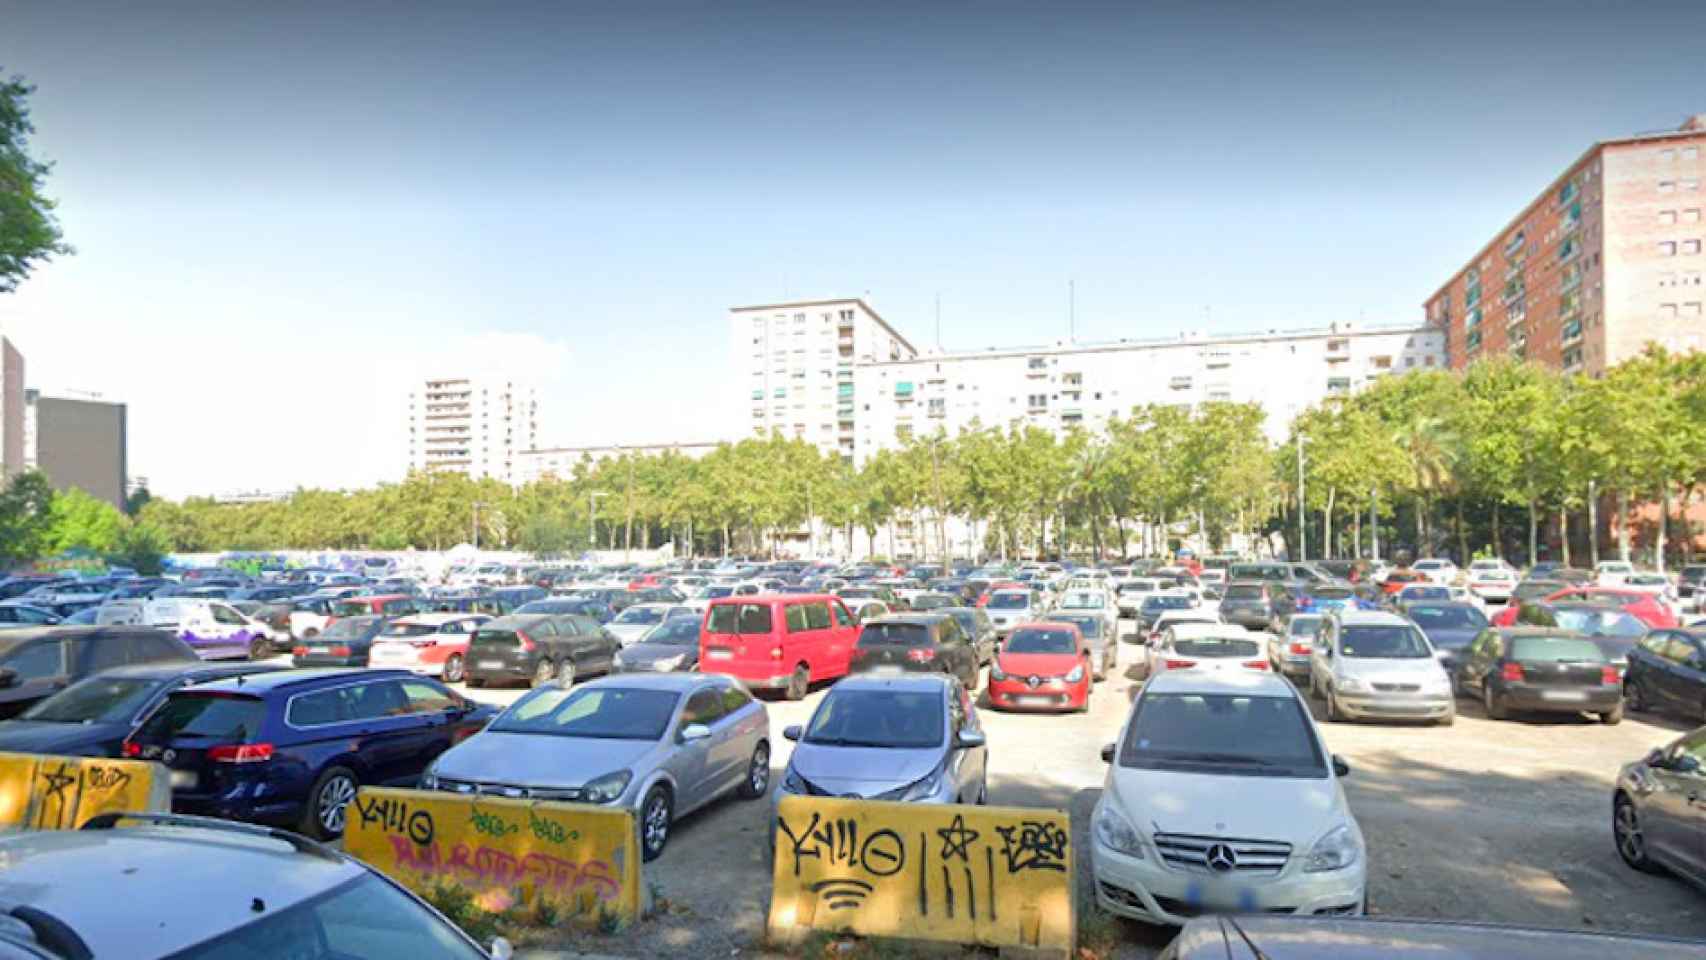 Parking público similar al de Sant Martí, en el que tres personas han robado en nueve vehículos / GOOGLE MAPS